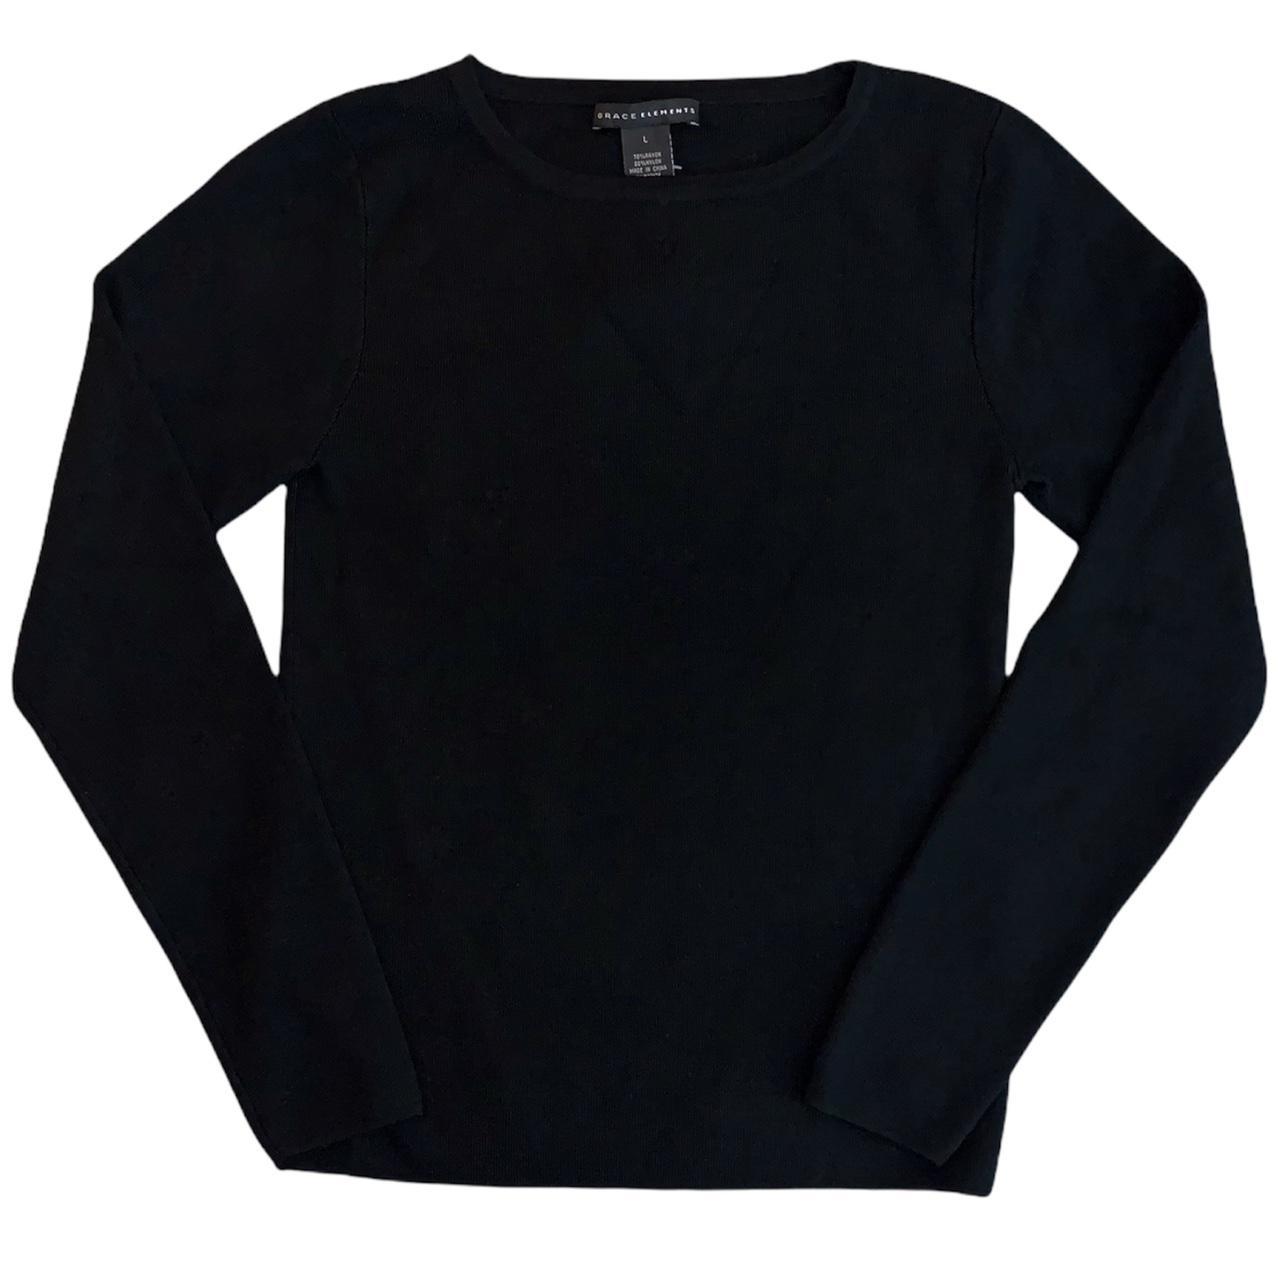 Product Image 1 - Basic Black Sweater size large